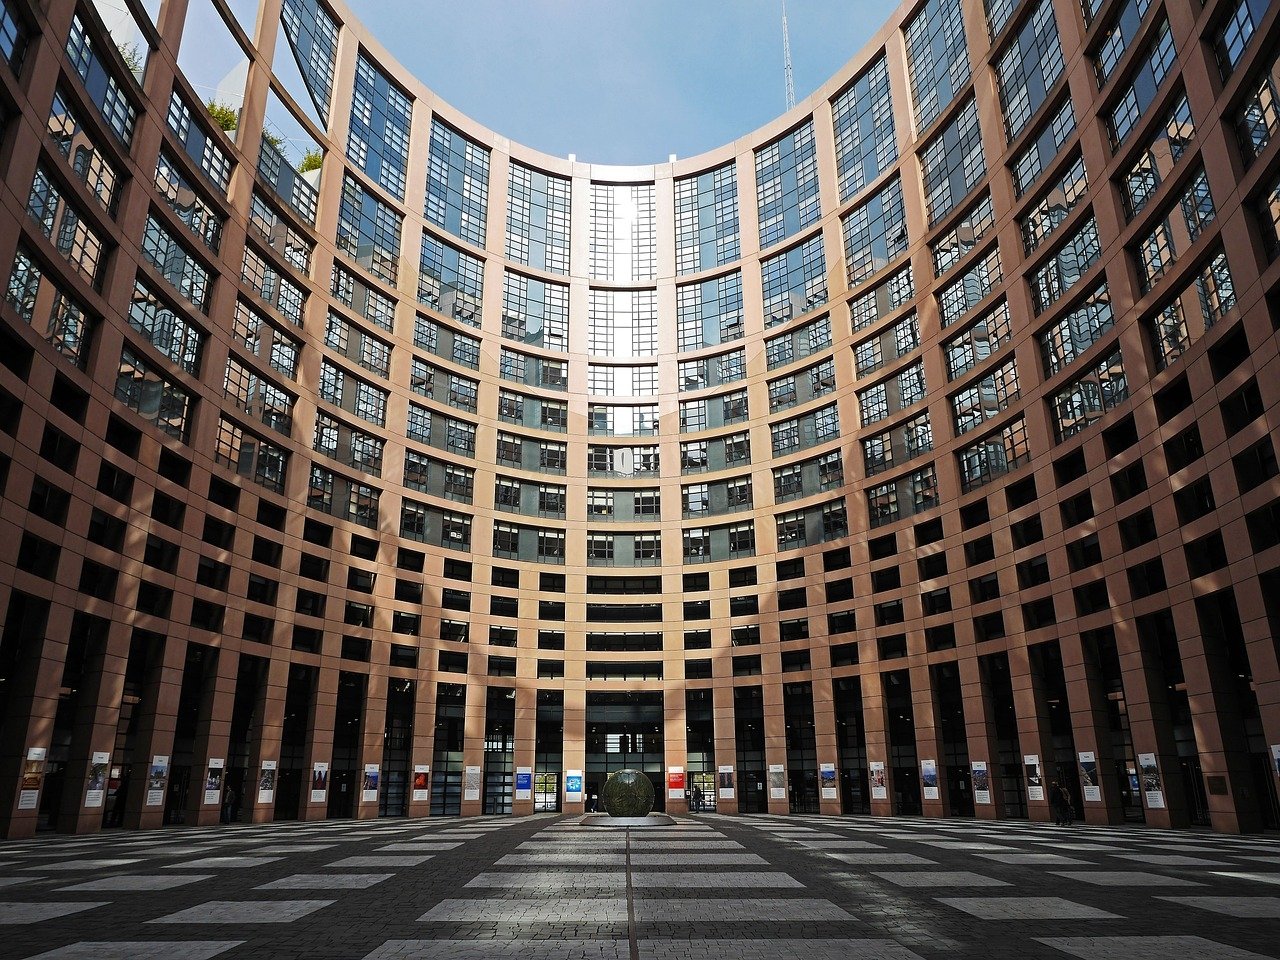 Parlamento da União Europeia